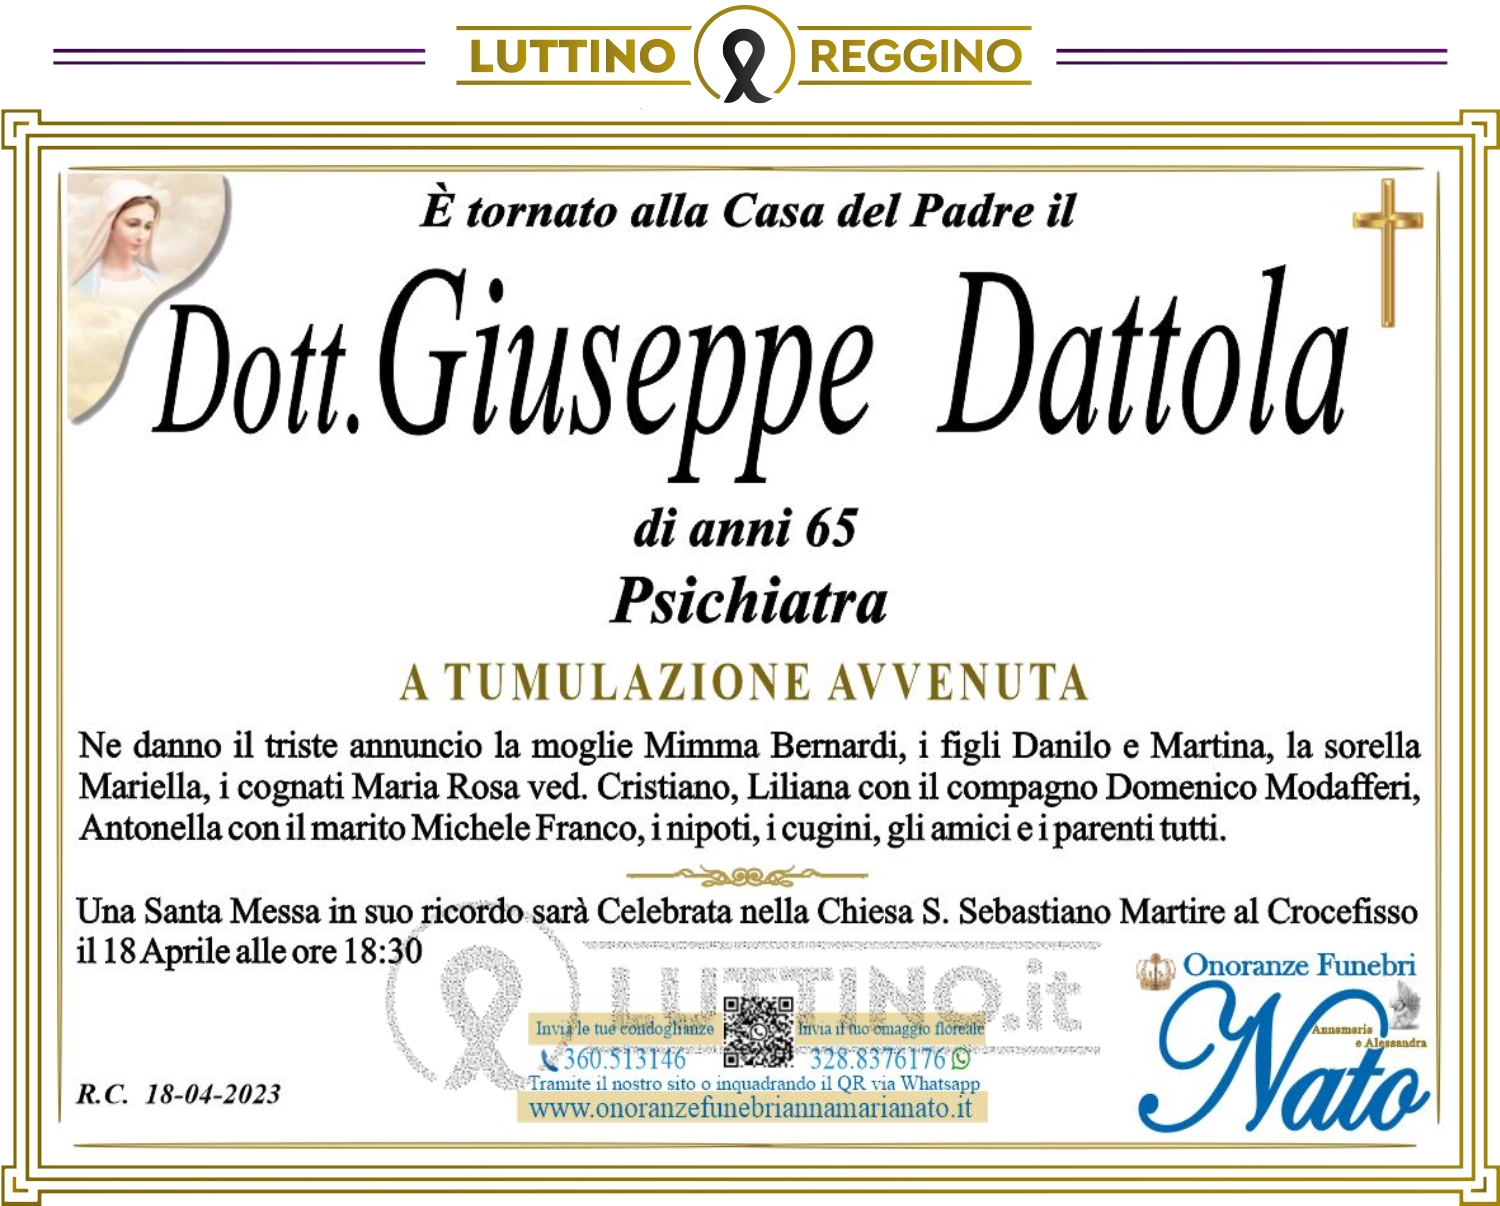 Giuseppe Dattola